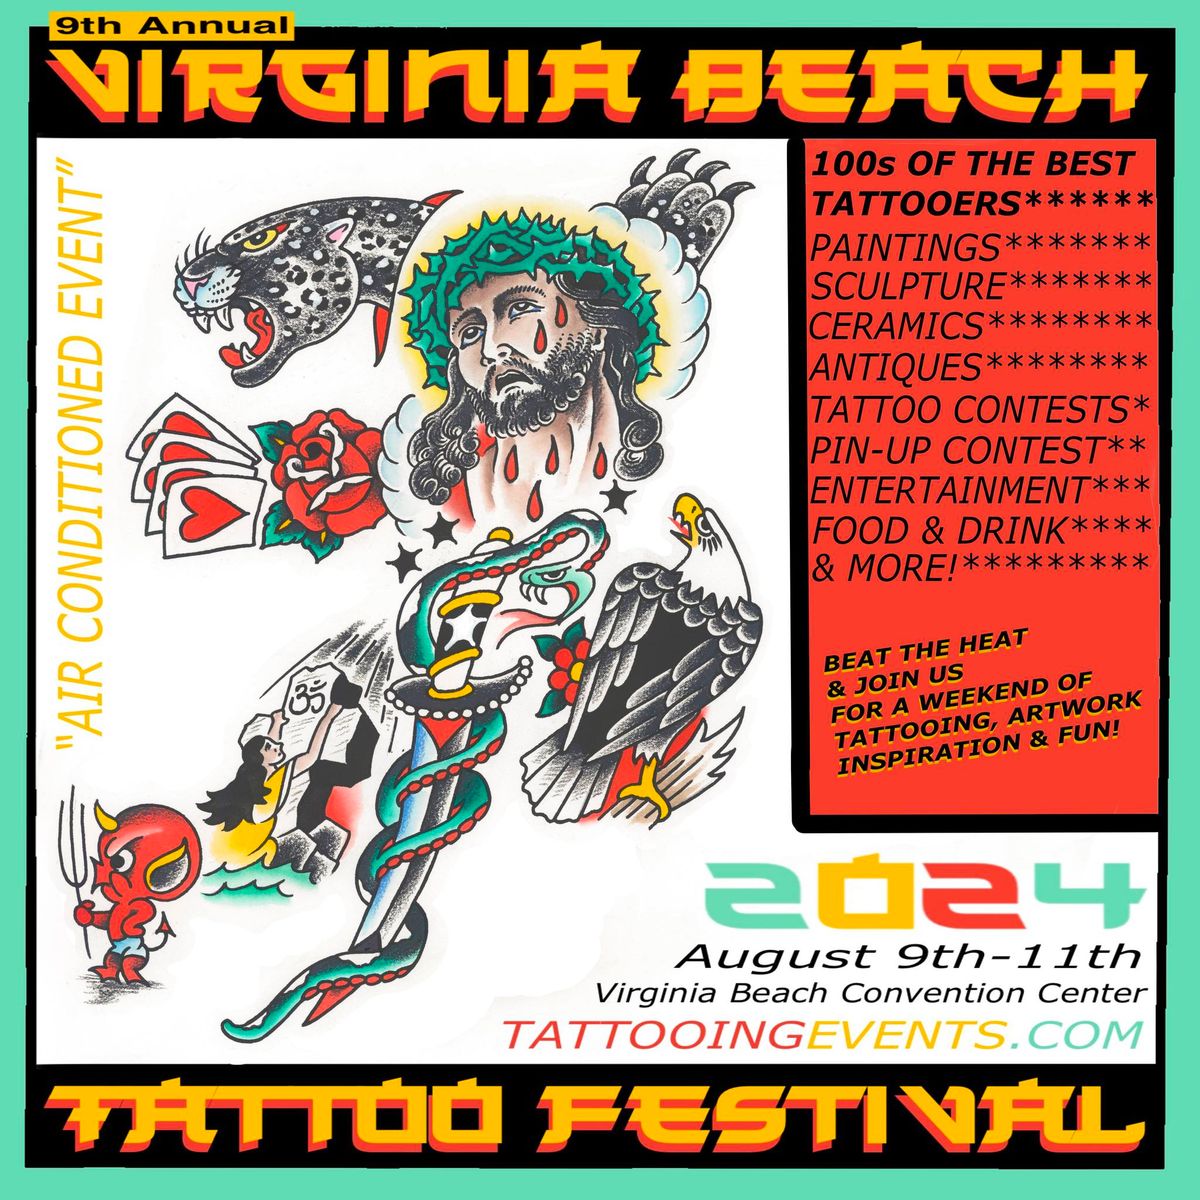 9th Annual Virginia Beach Tattoo Festival